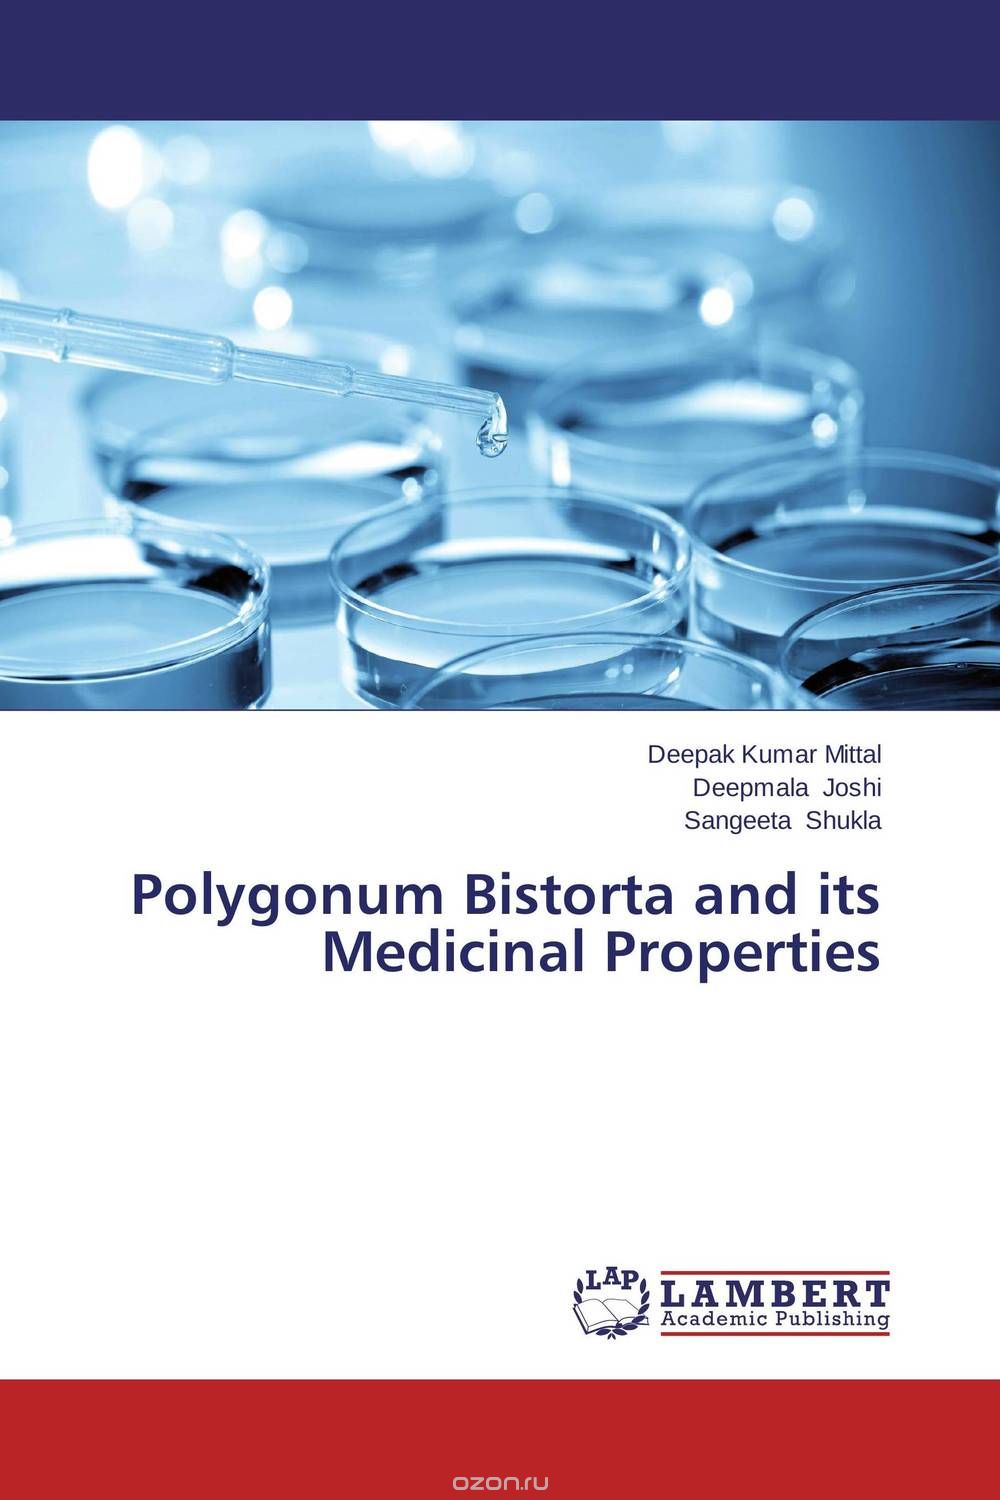 Скачать книгу "Polygonum Bistorta and its Medicinal Properties"